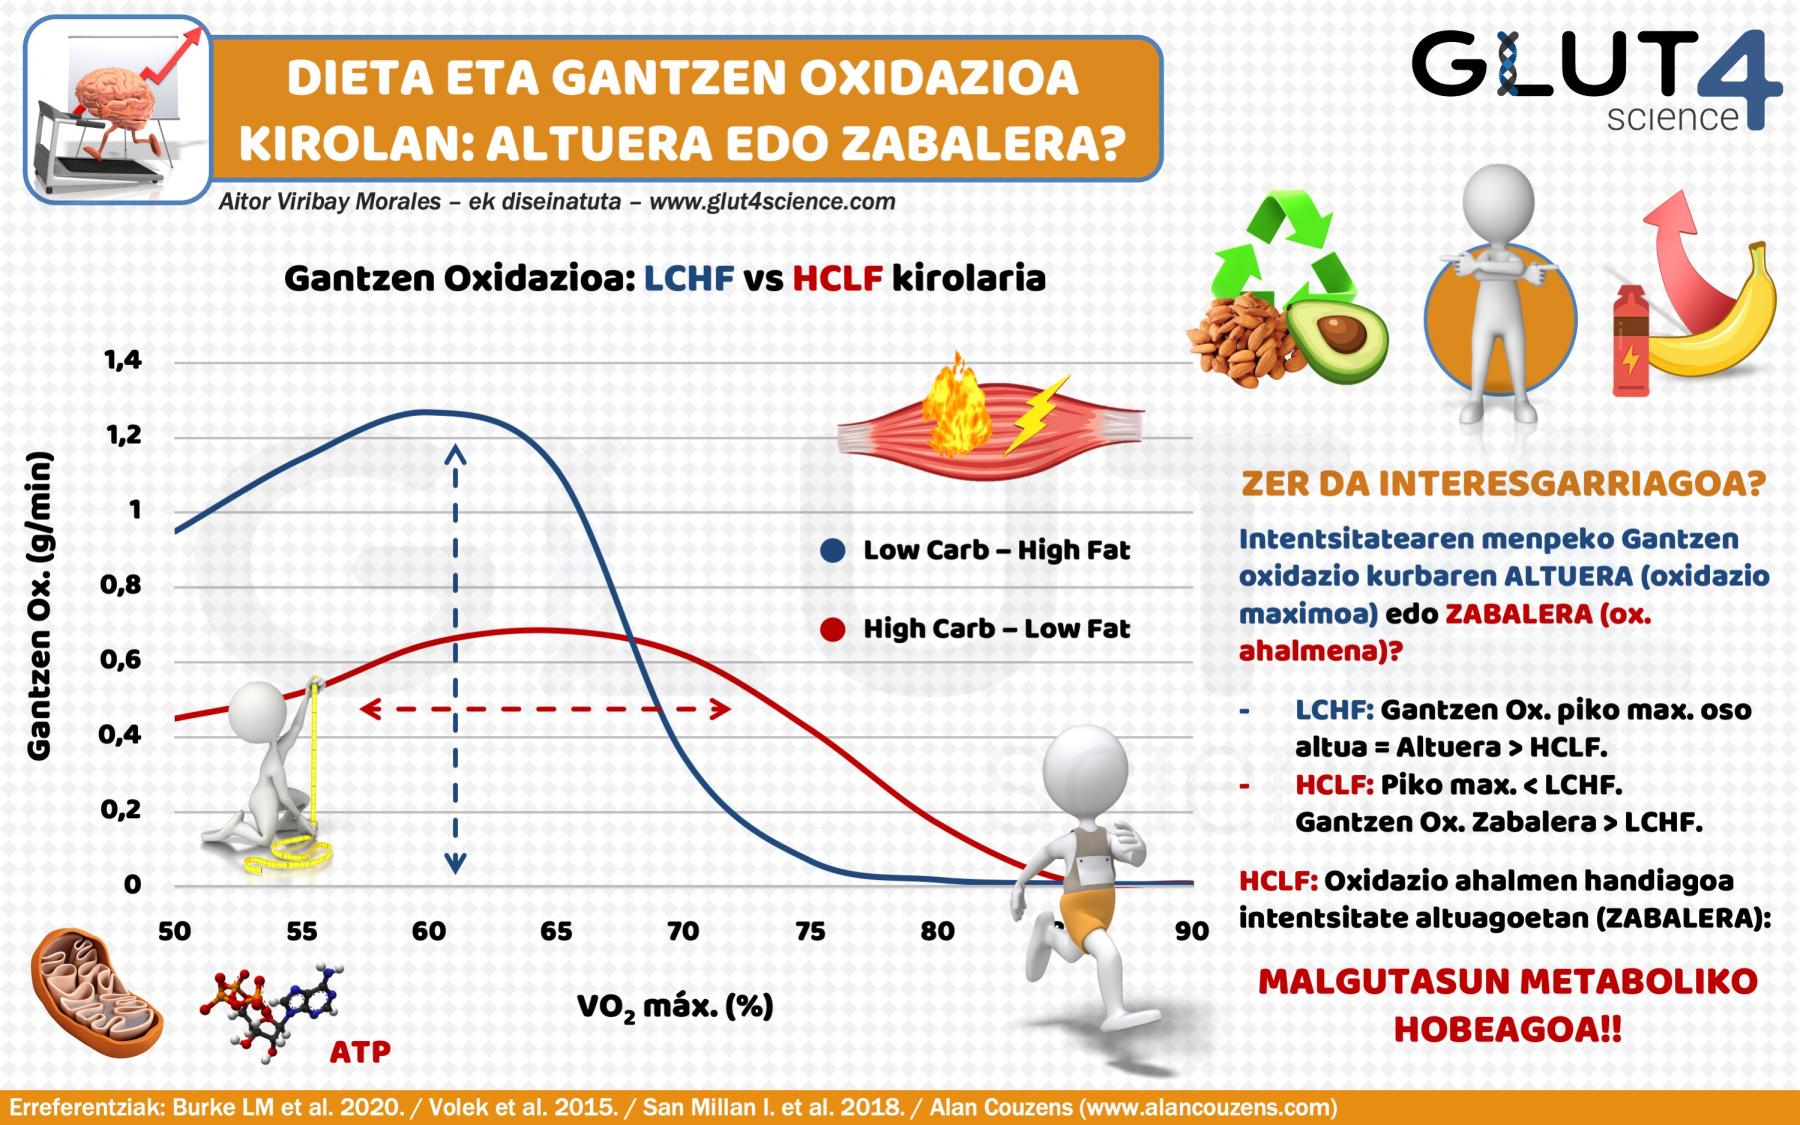 Gantzen oxidazioa kirolarietan: Dieta Low Carb eta High Fat